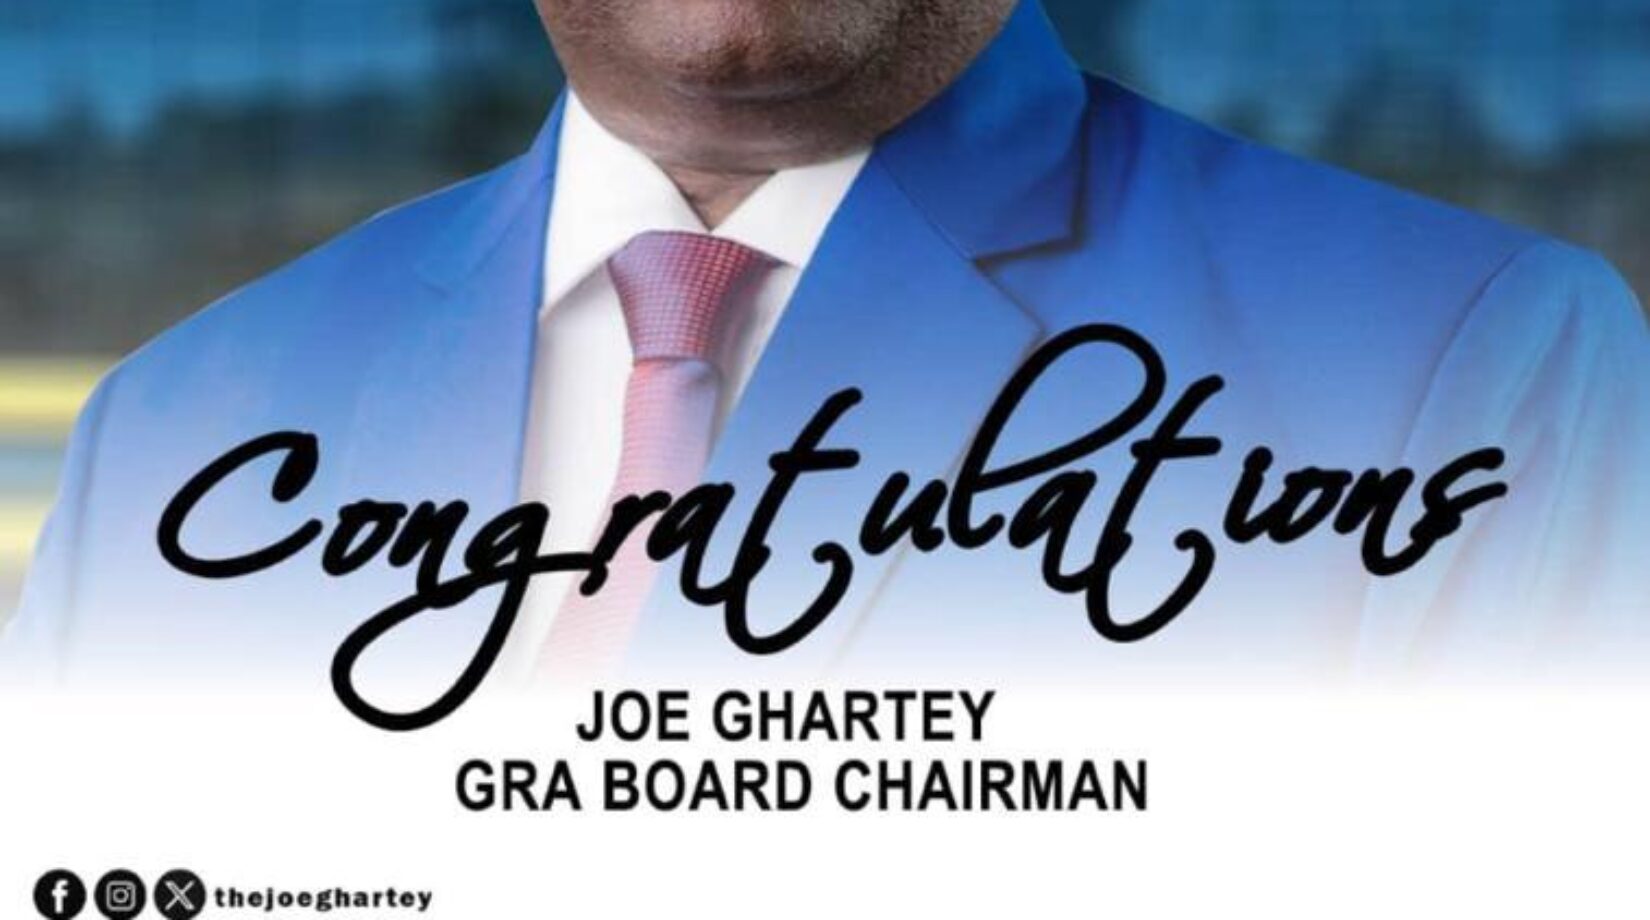 Joe Ghartey appointed GRA Board Chairman